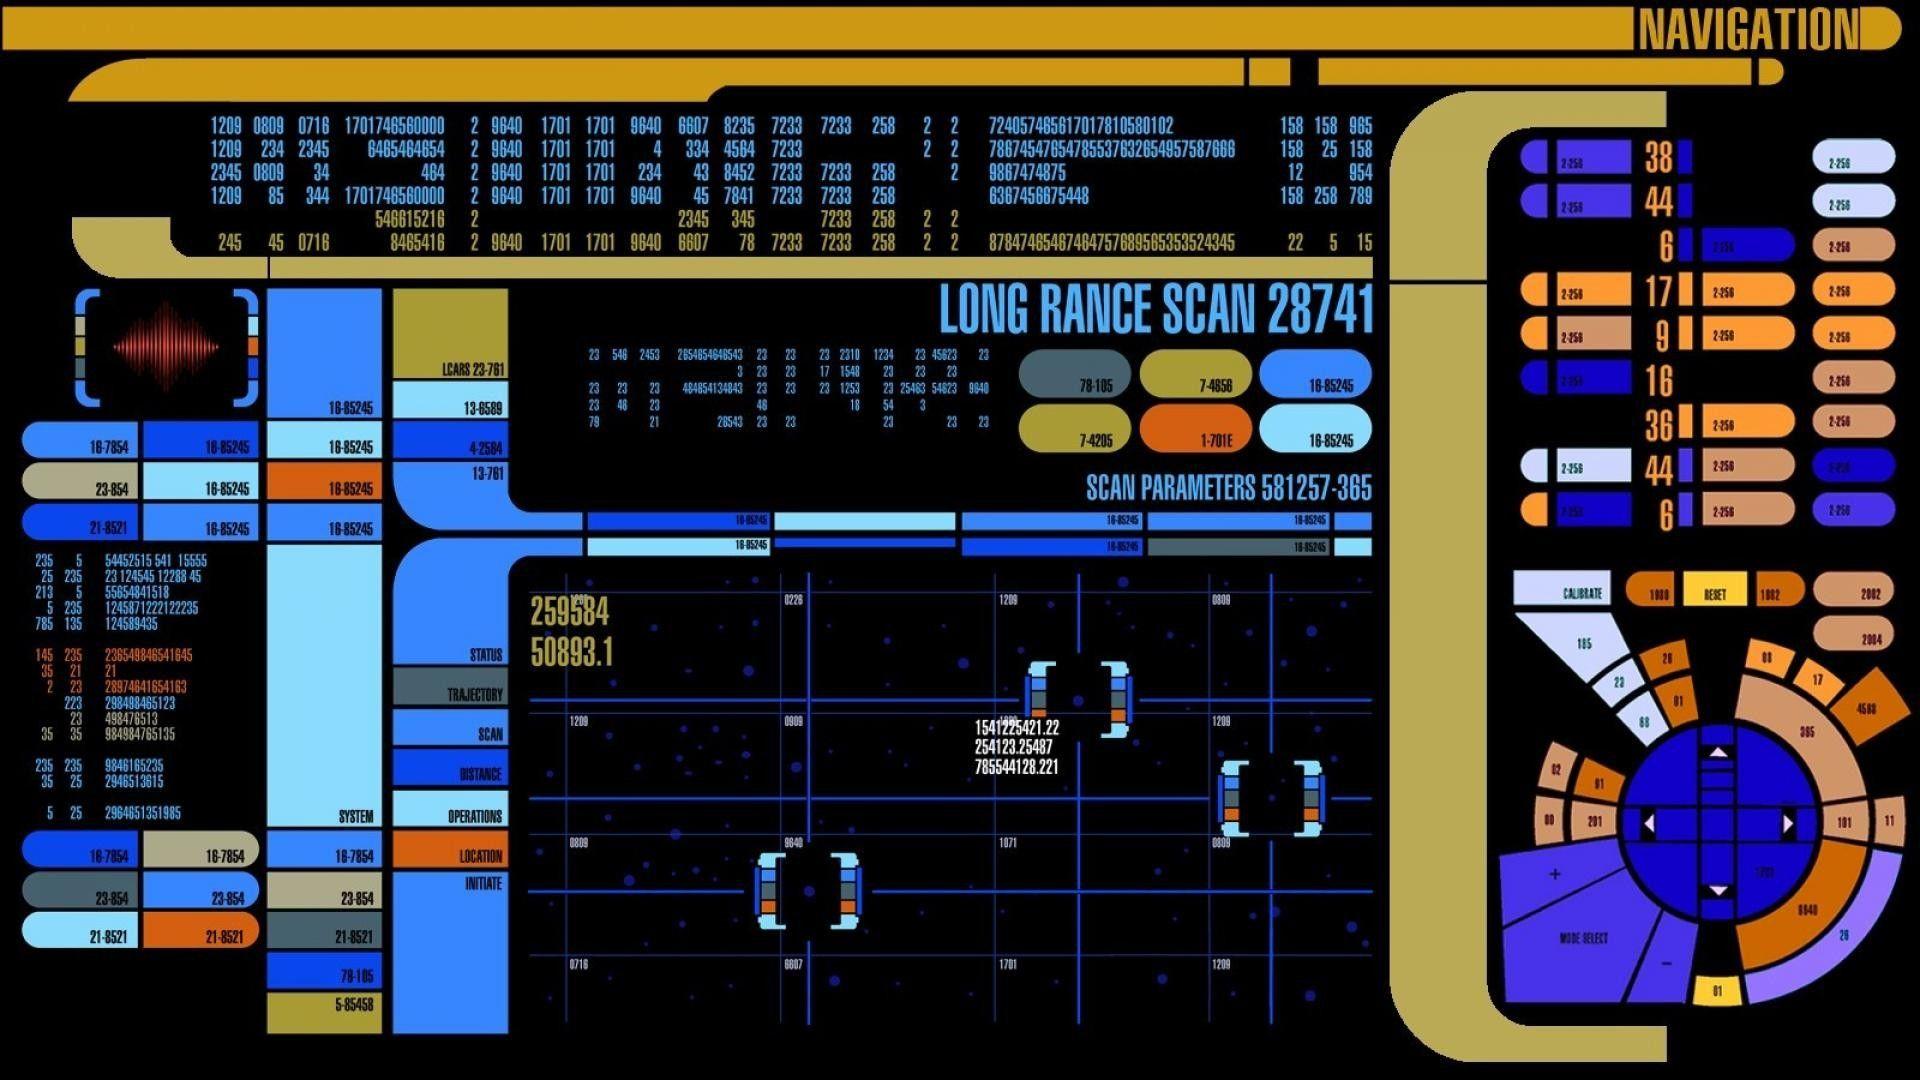 Star Trek Lcars Wallpaper